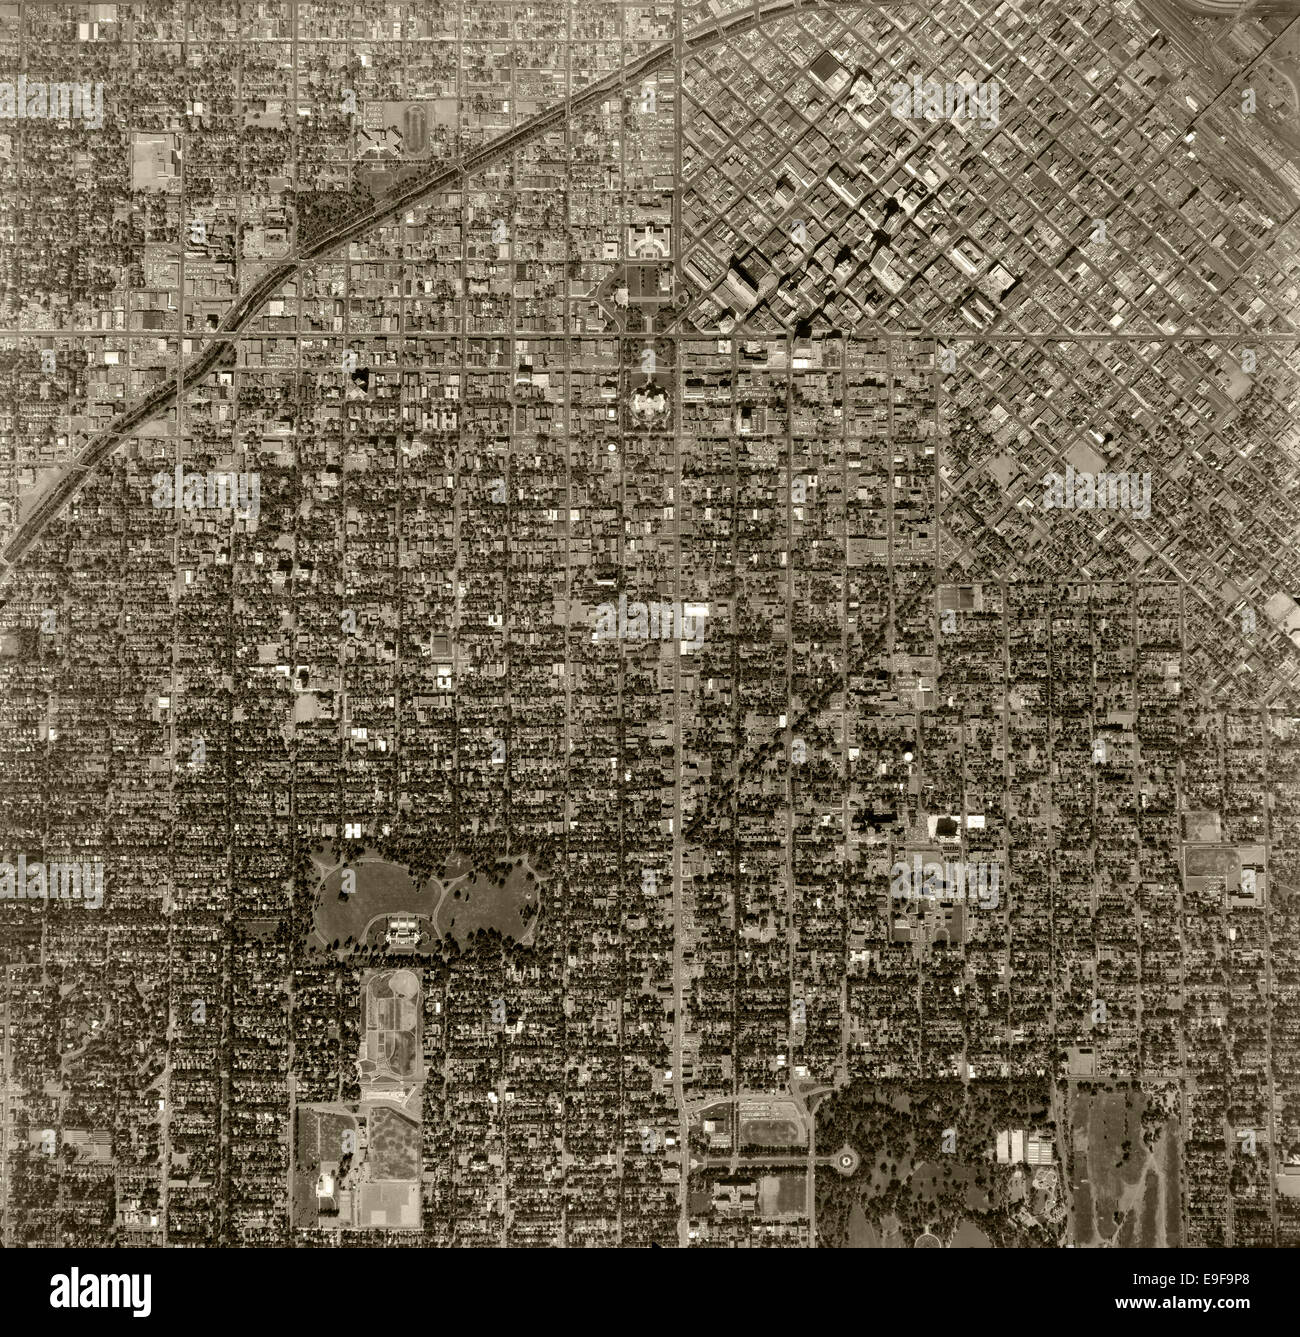 historical aerial photograph Denver, Colorado, 1963 Stock Photo